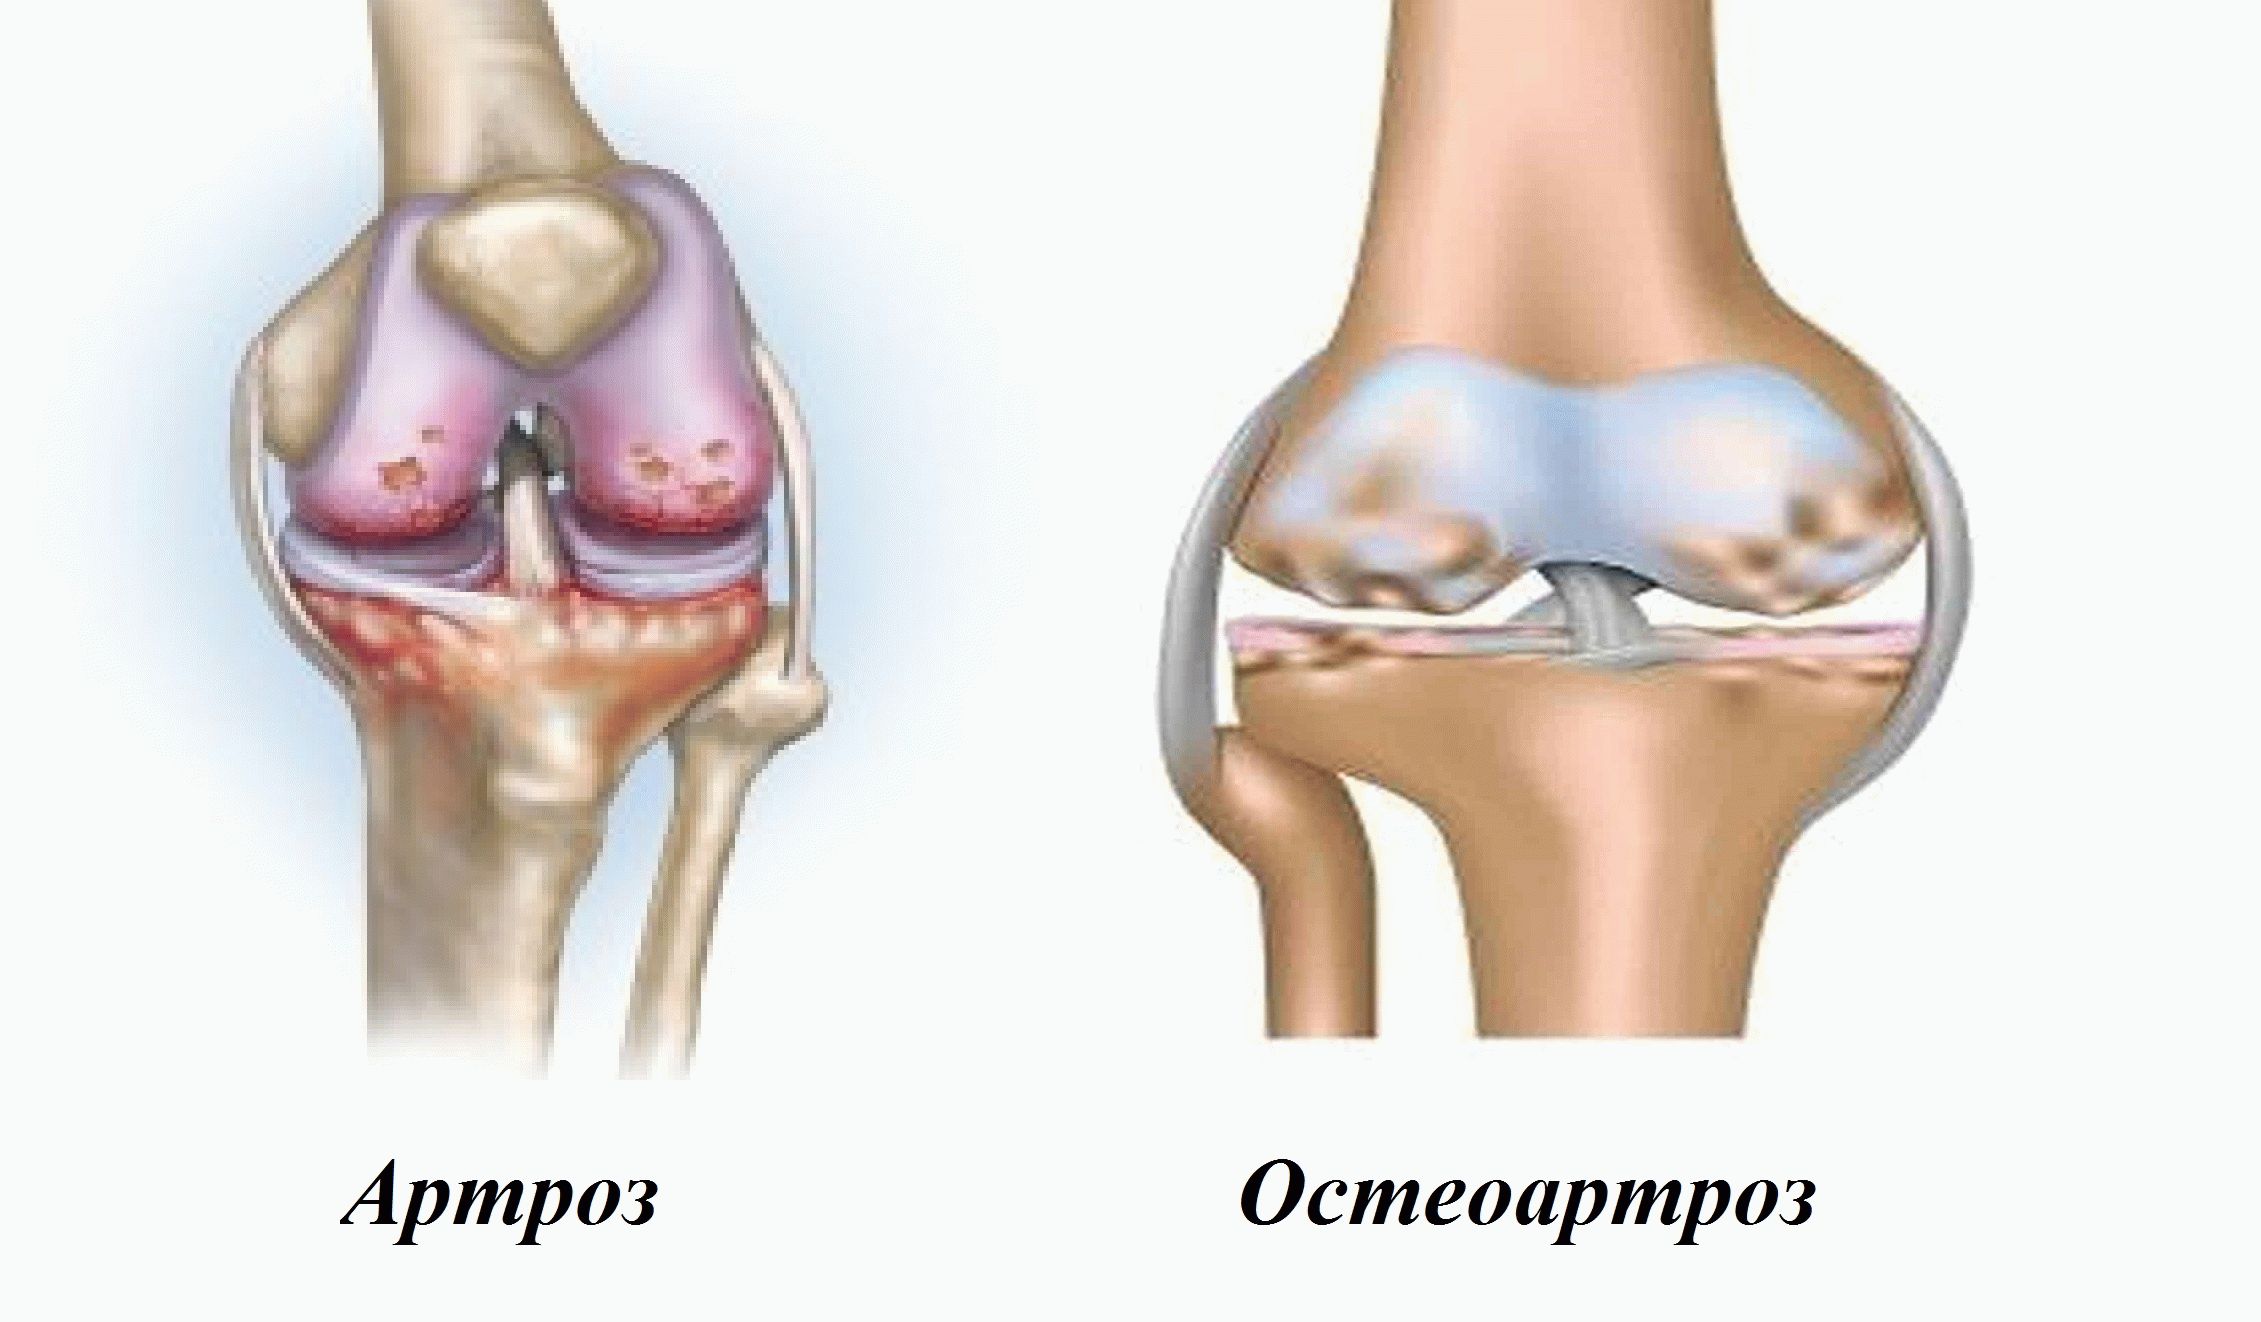 Поражение крупных суставов. Симптомы заболевания остеоартроз. Остеоартрит и остеоартроз. .Деформирующий остеоартрит остеоартроз. Деформирующий артроз (остеоартроз).